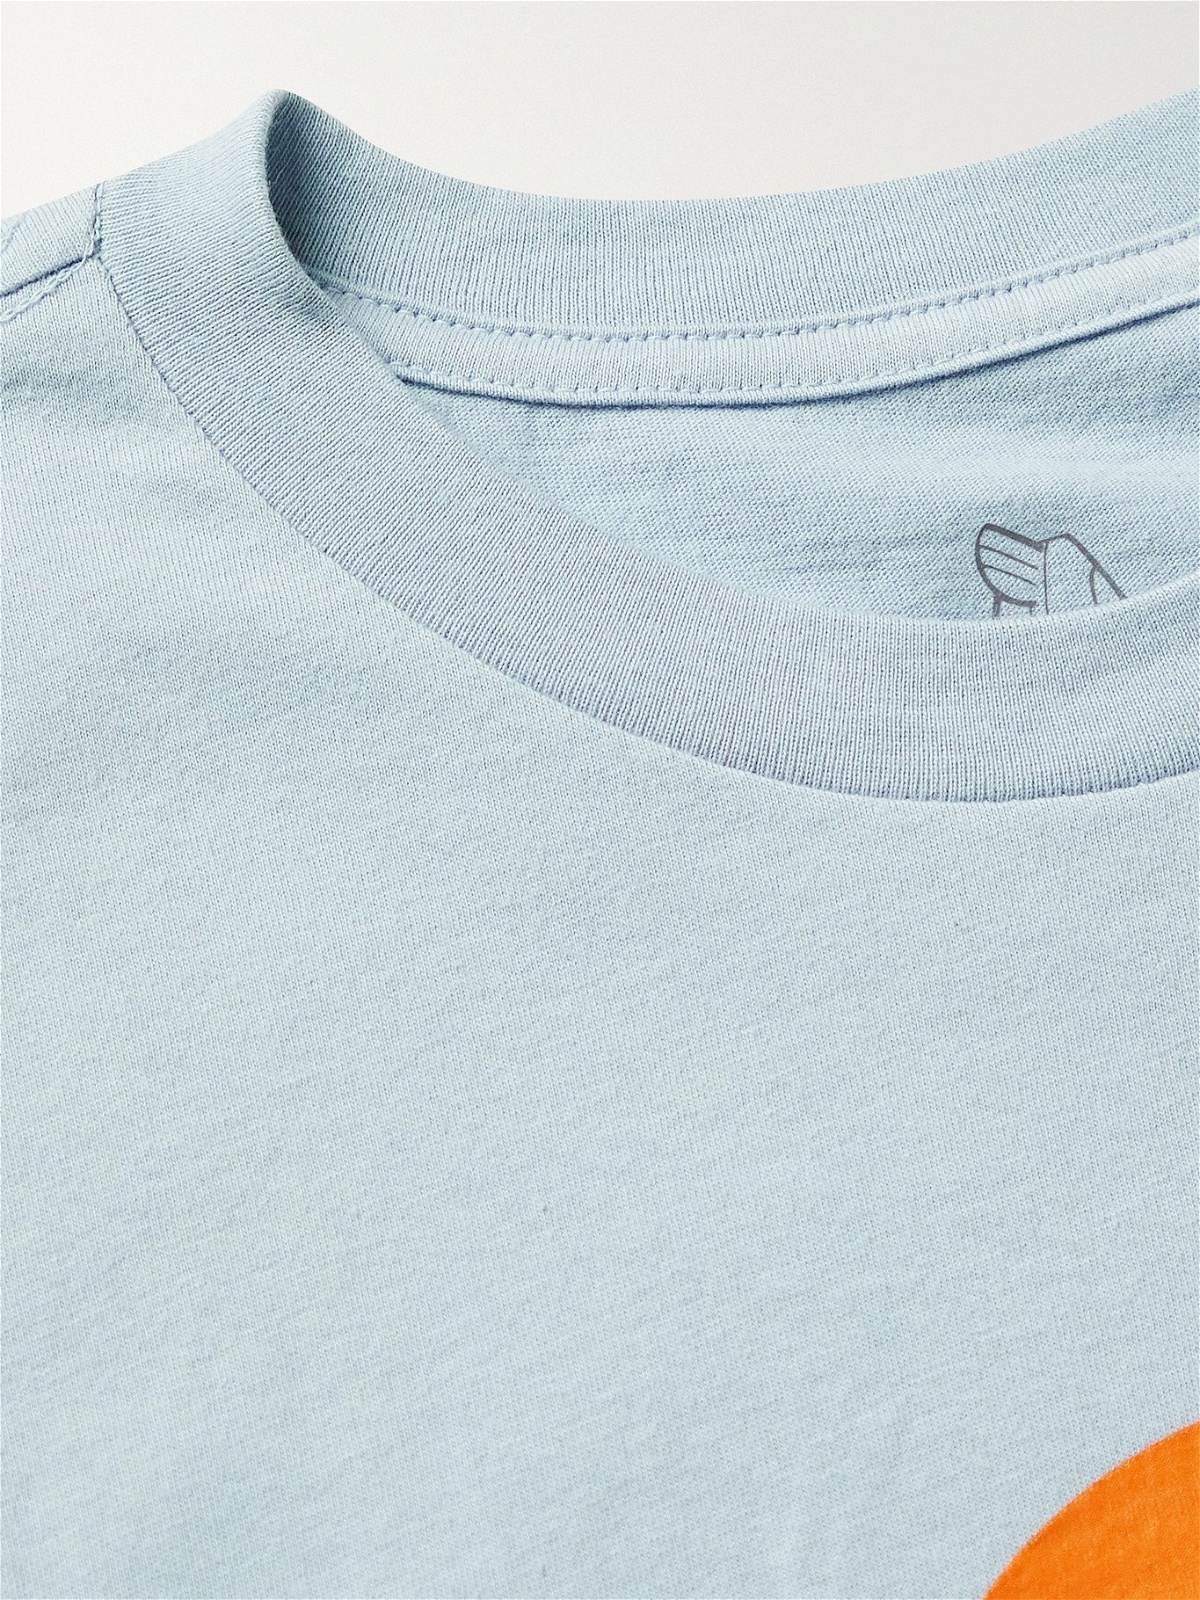 BIRDWELL - Flame Wave Logo-Print Cotton-Jersey T-Shirt - Blue Birdwell